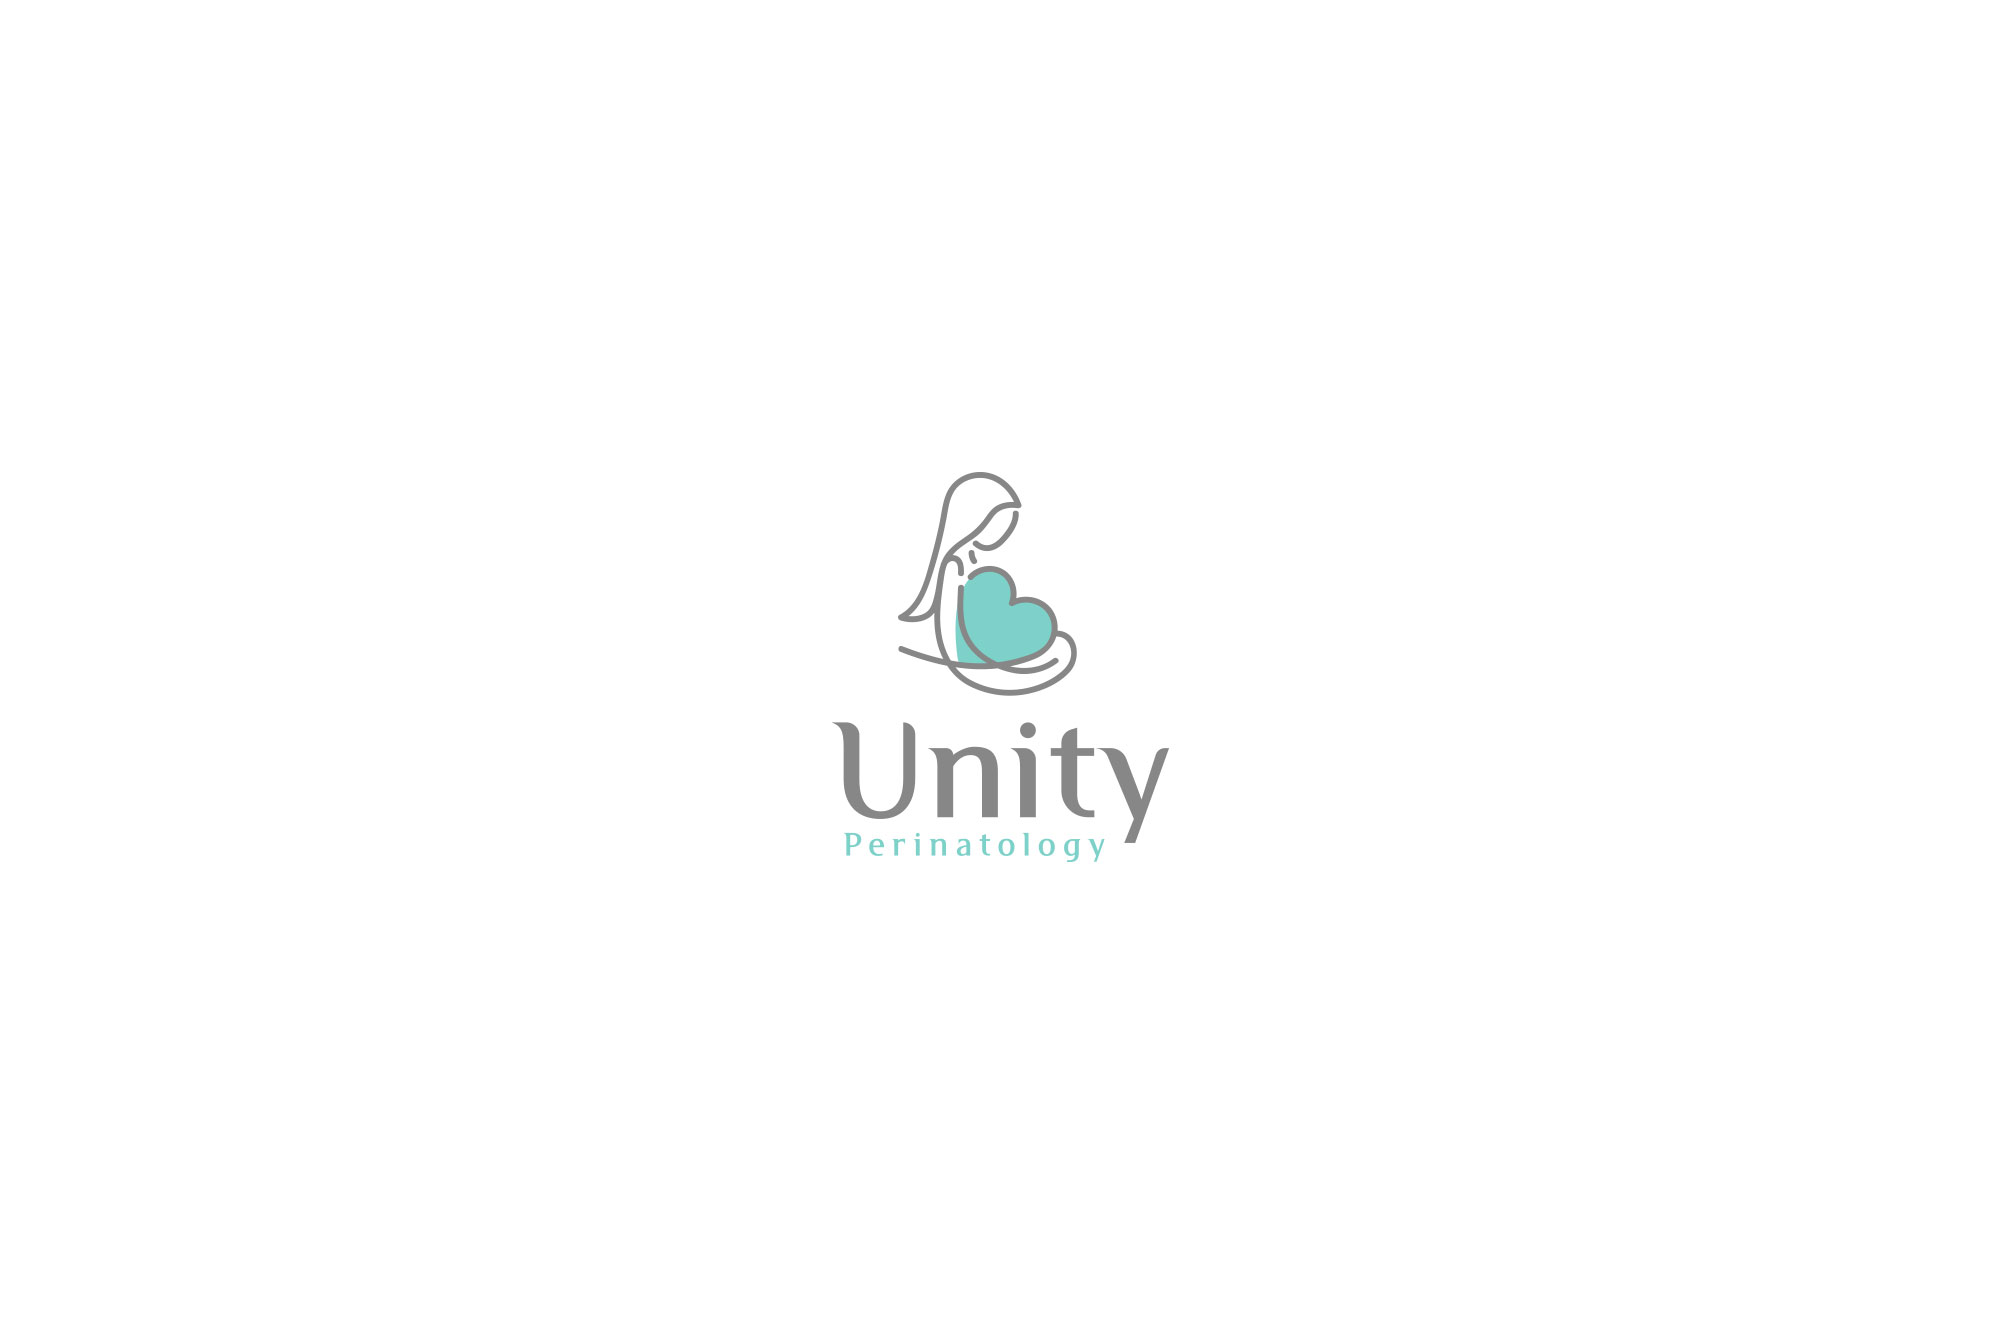 Logotipo-Designer-Grafico-Design-Logotipo-Unity-Perinatology-Rodnei-Cruz-2